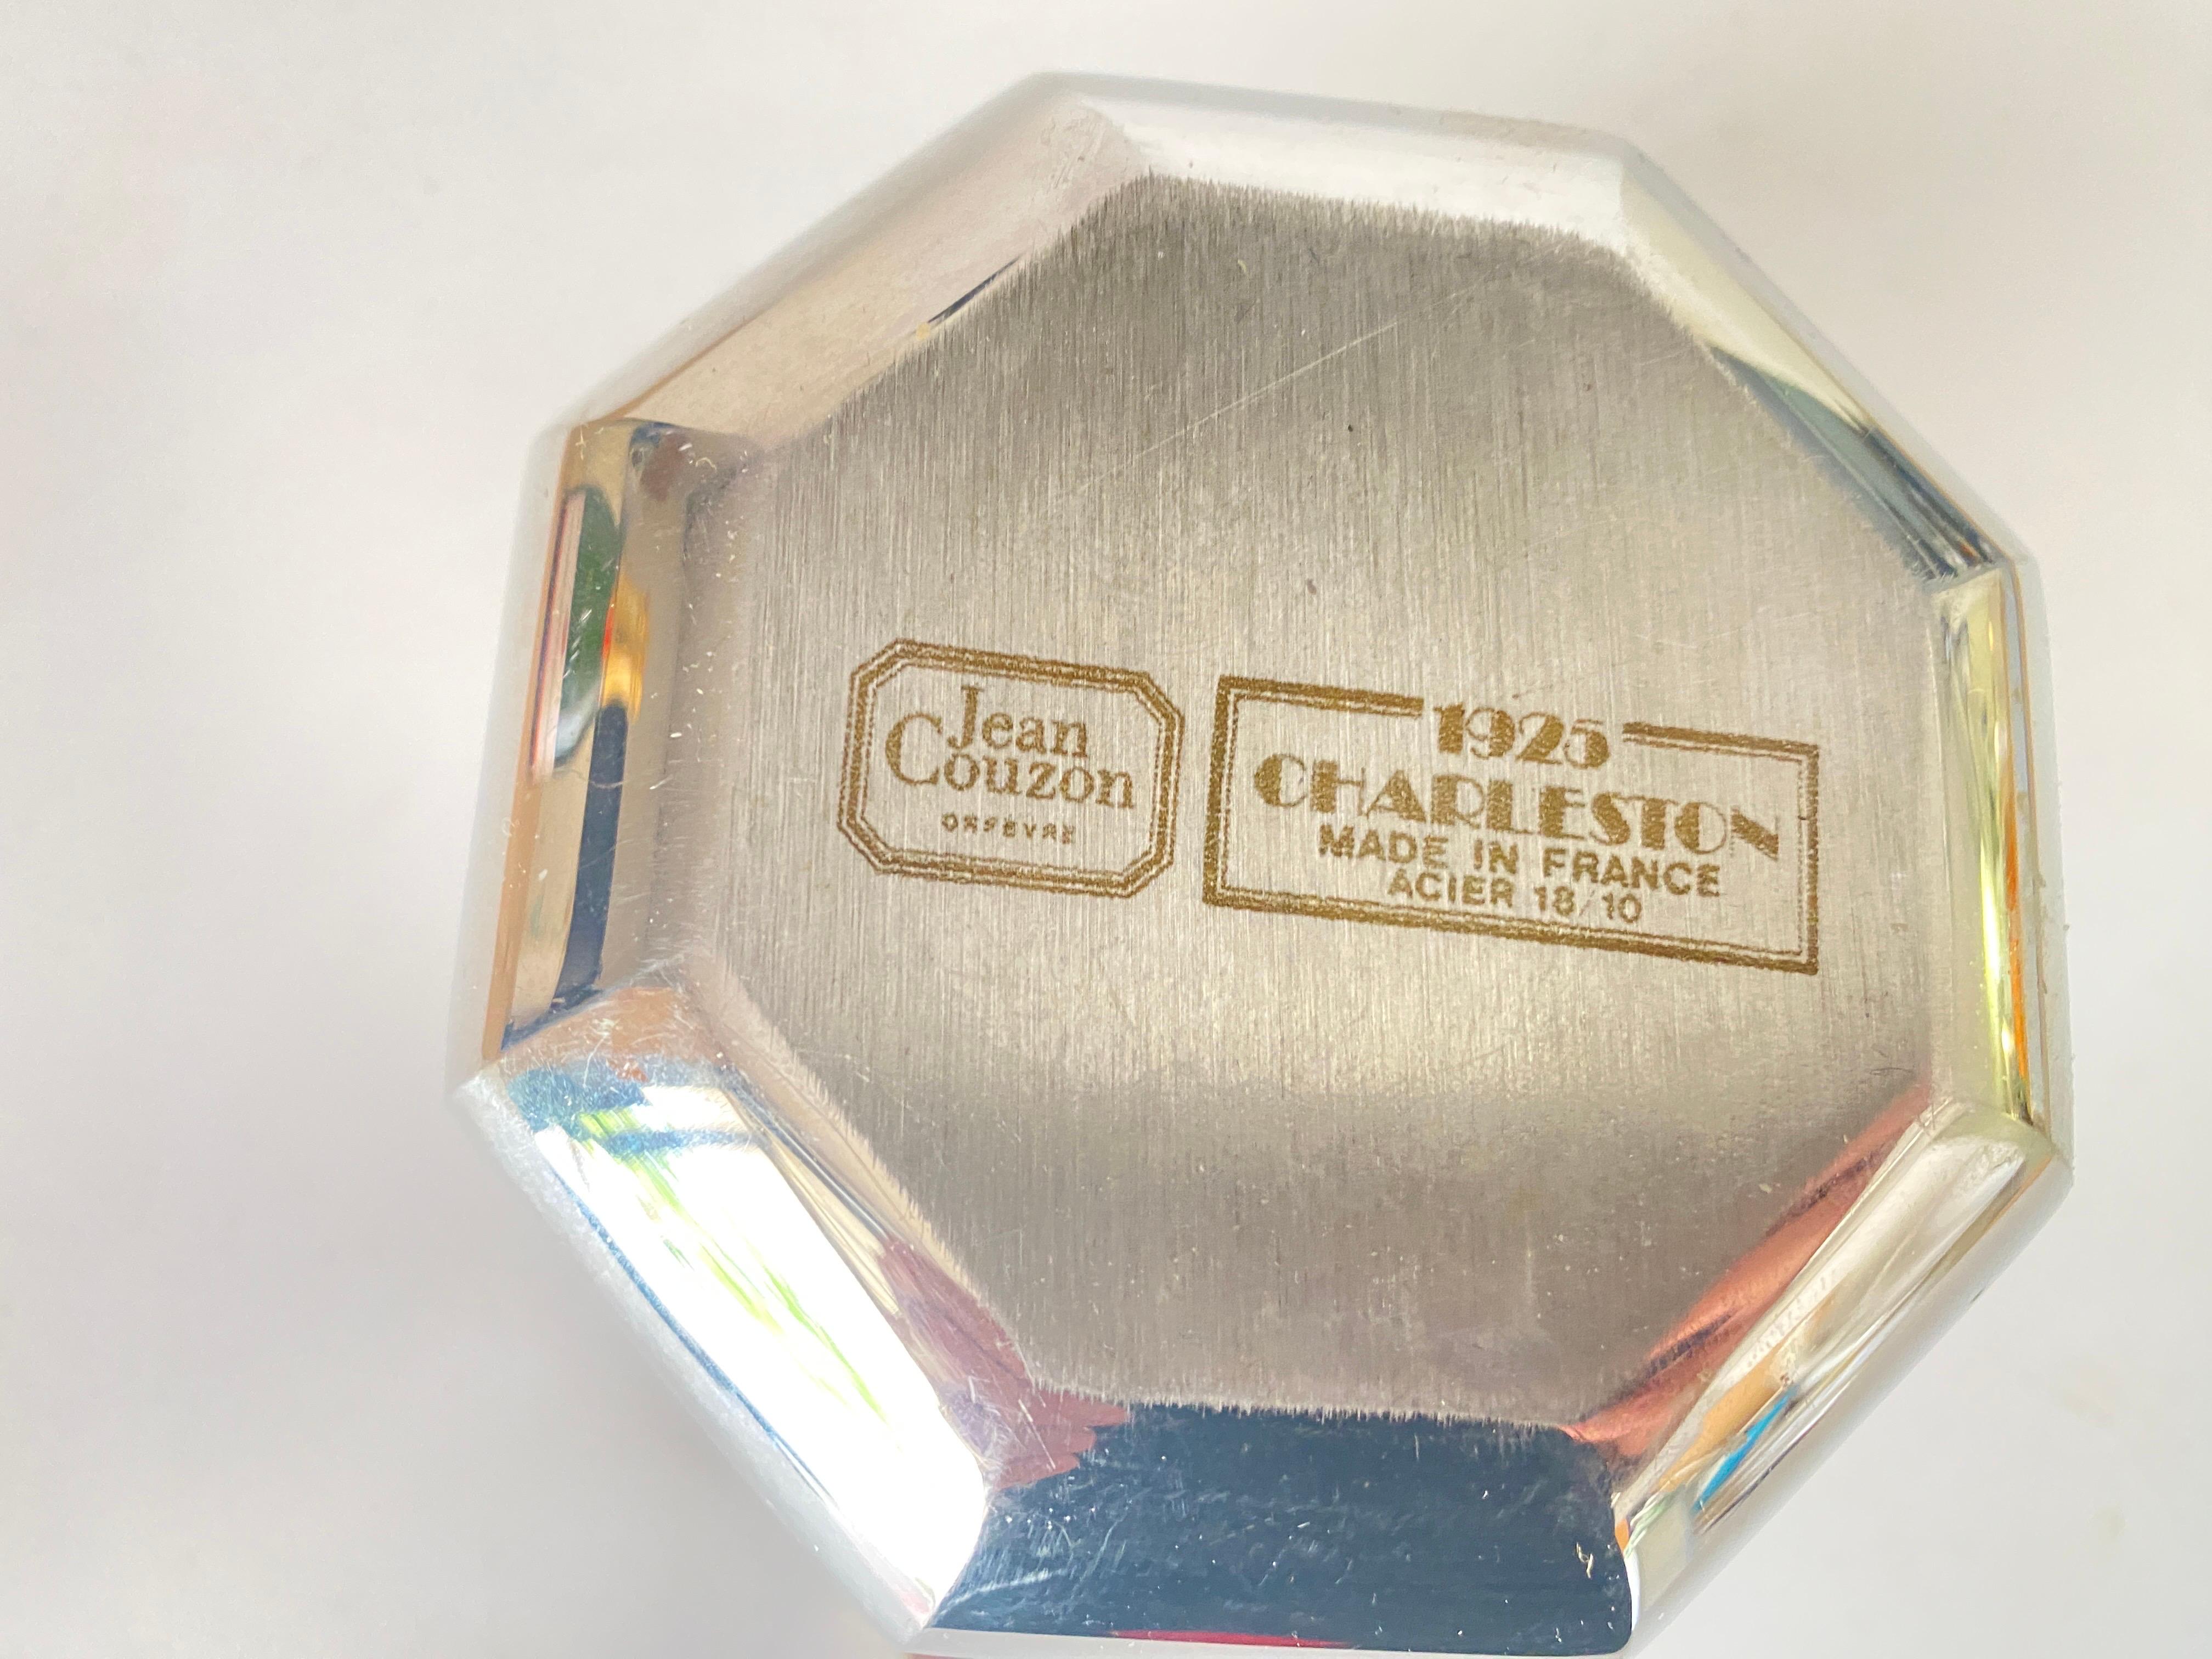 Dieser Eiskübel ist aus Stahl. Sie stammt aus Frankreich und wurde um 1970 vom Goldschmied Jean Couzon hergestellt. Es ist die  Charleston Modell.
Farbe Silber und Gold.